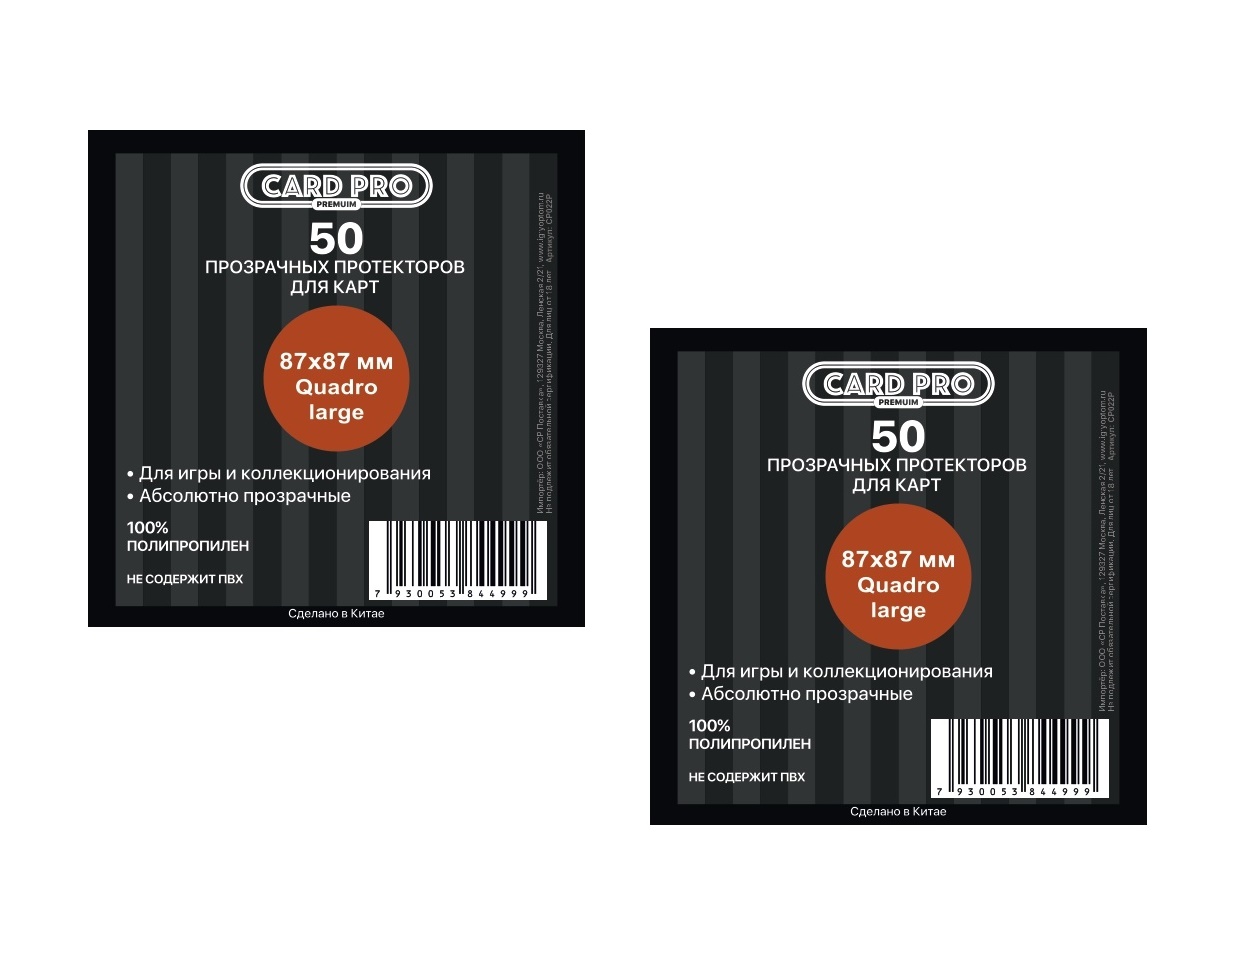 Протекторы Card-Pro PREMIUM Quadro large для настольных игр 50 шт. 87x87 мм. 2 пачки